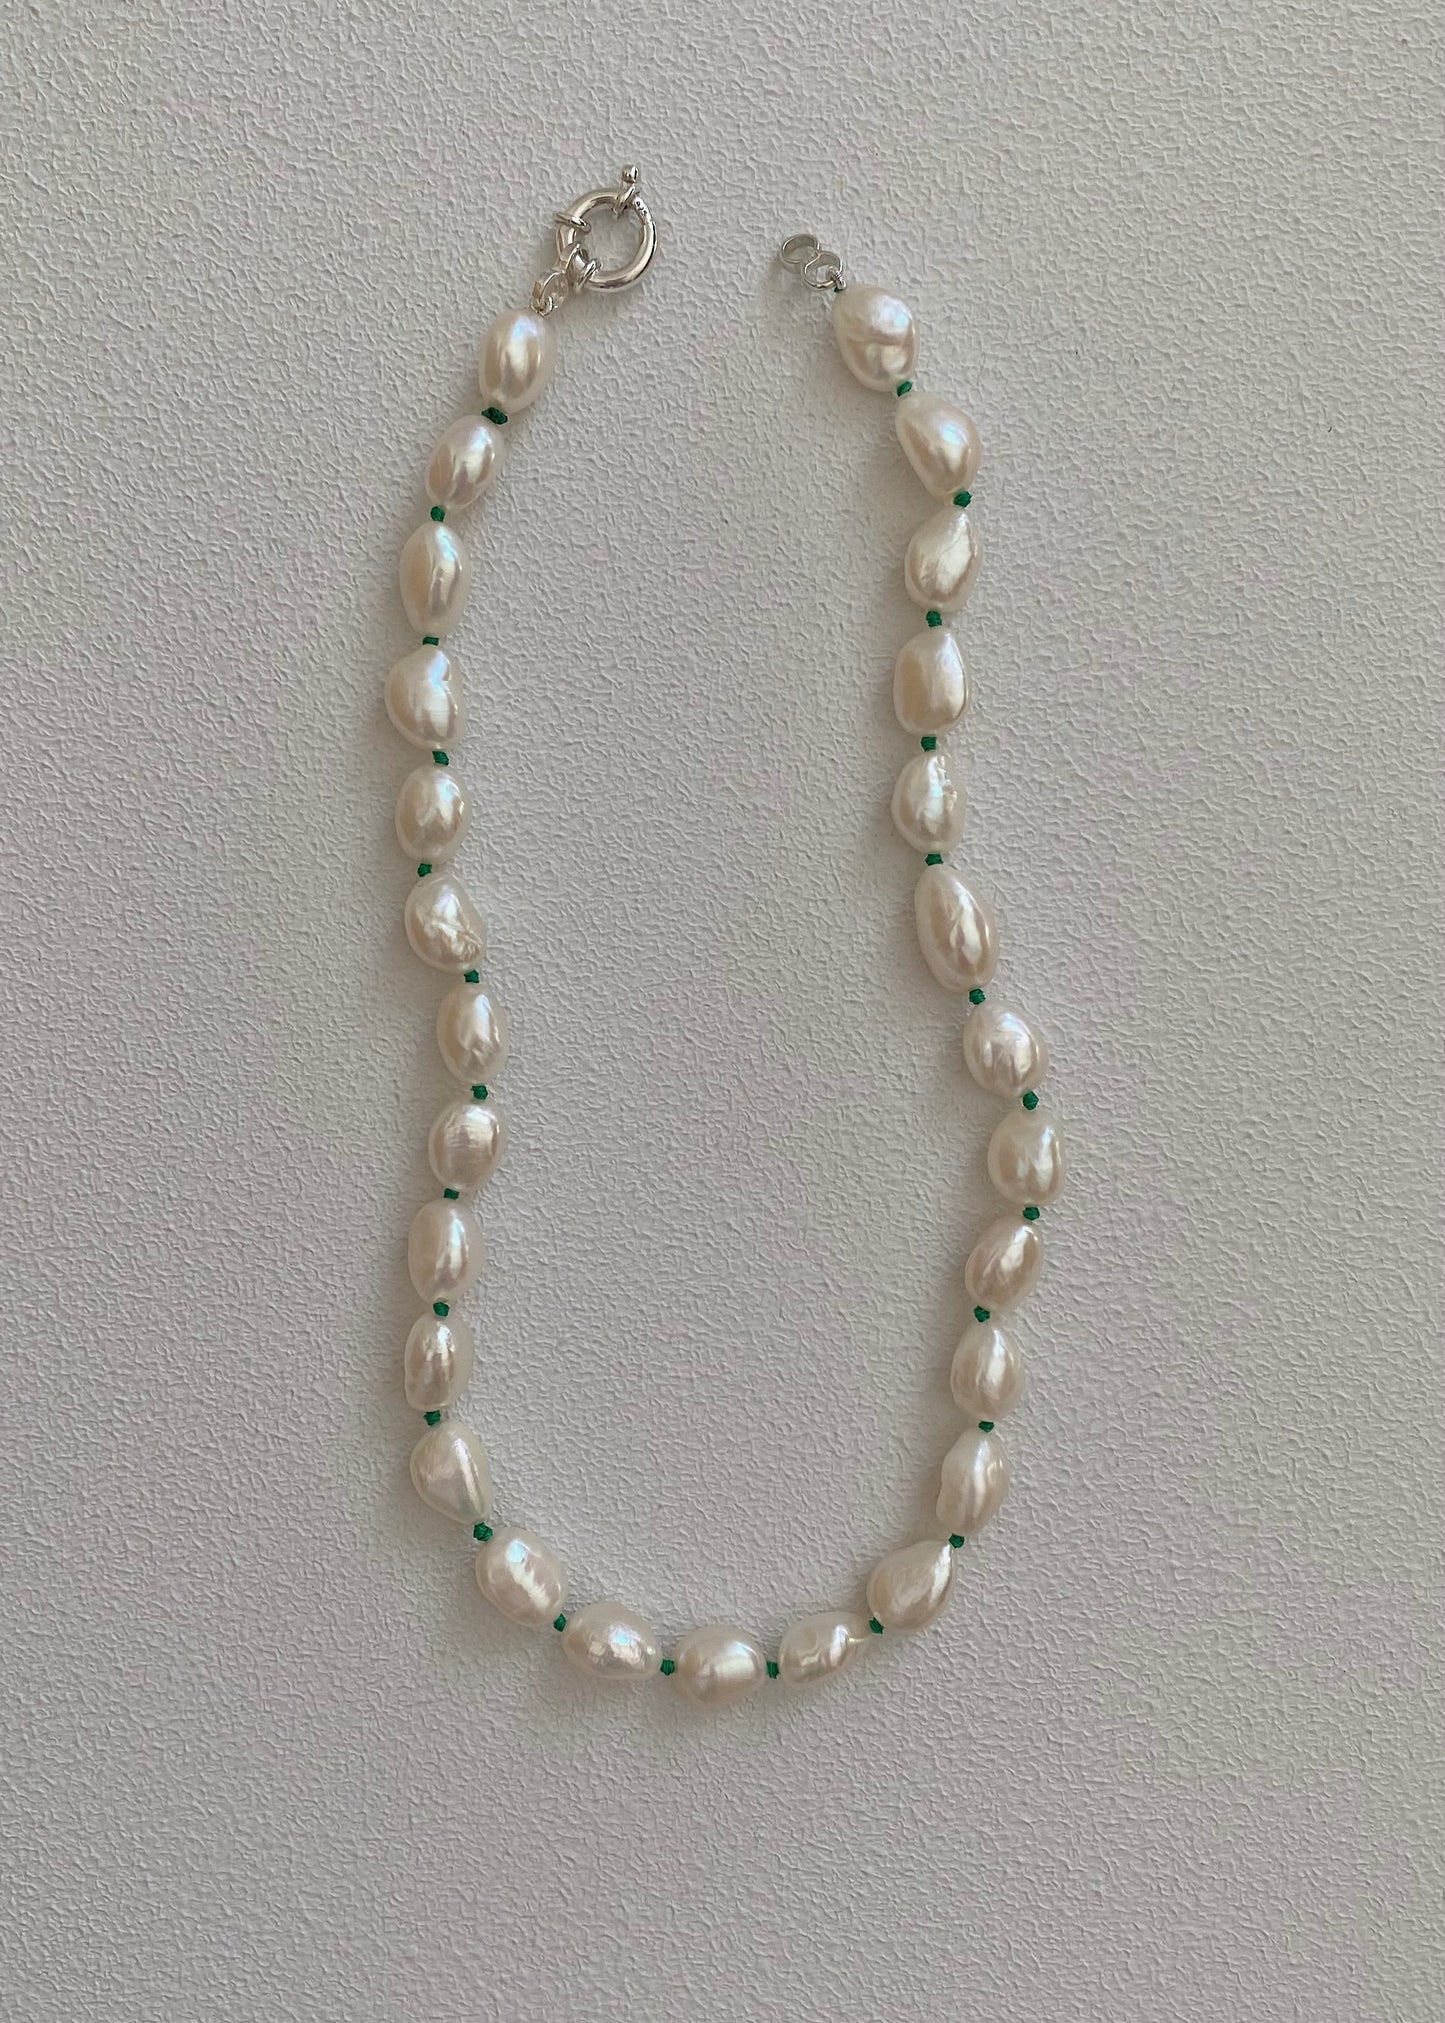 Escape pearl necklace